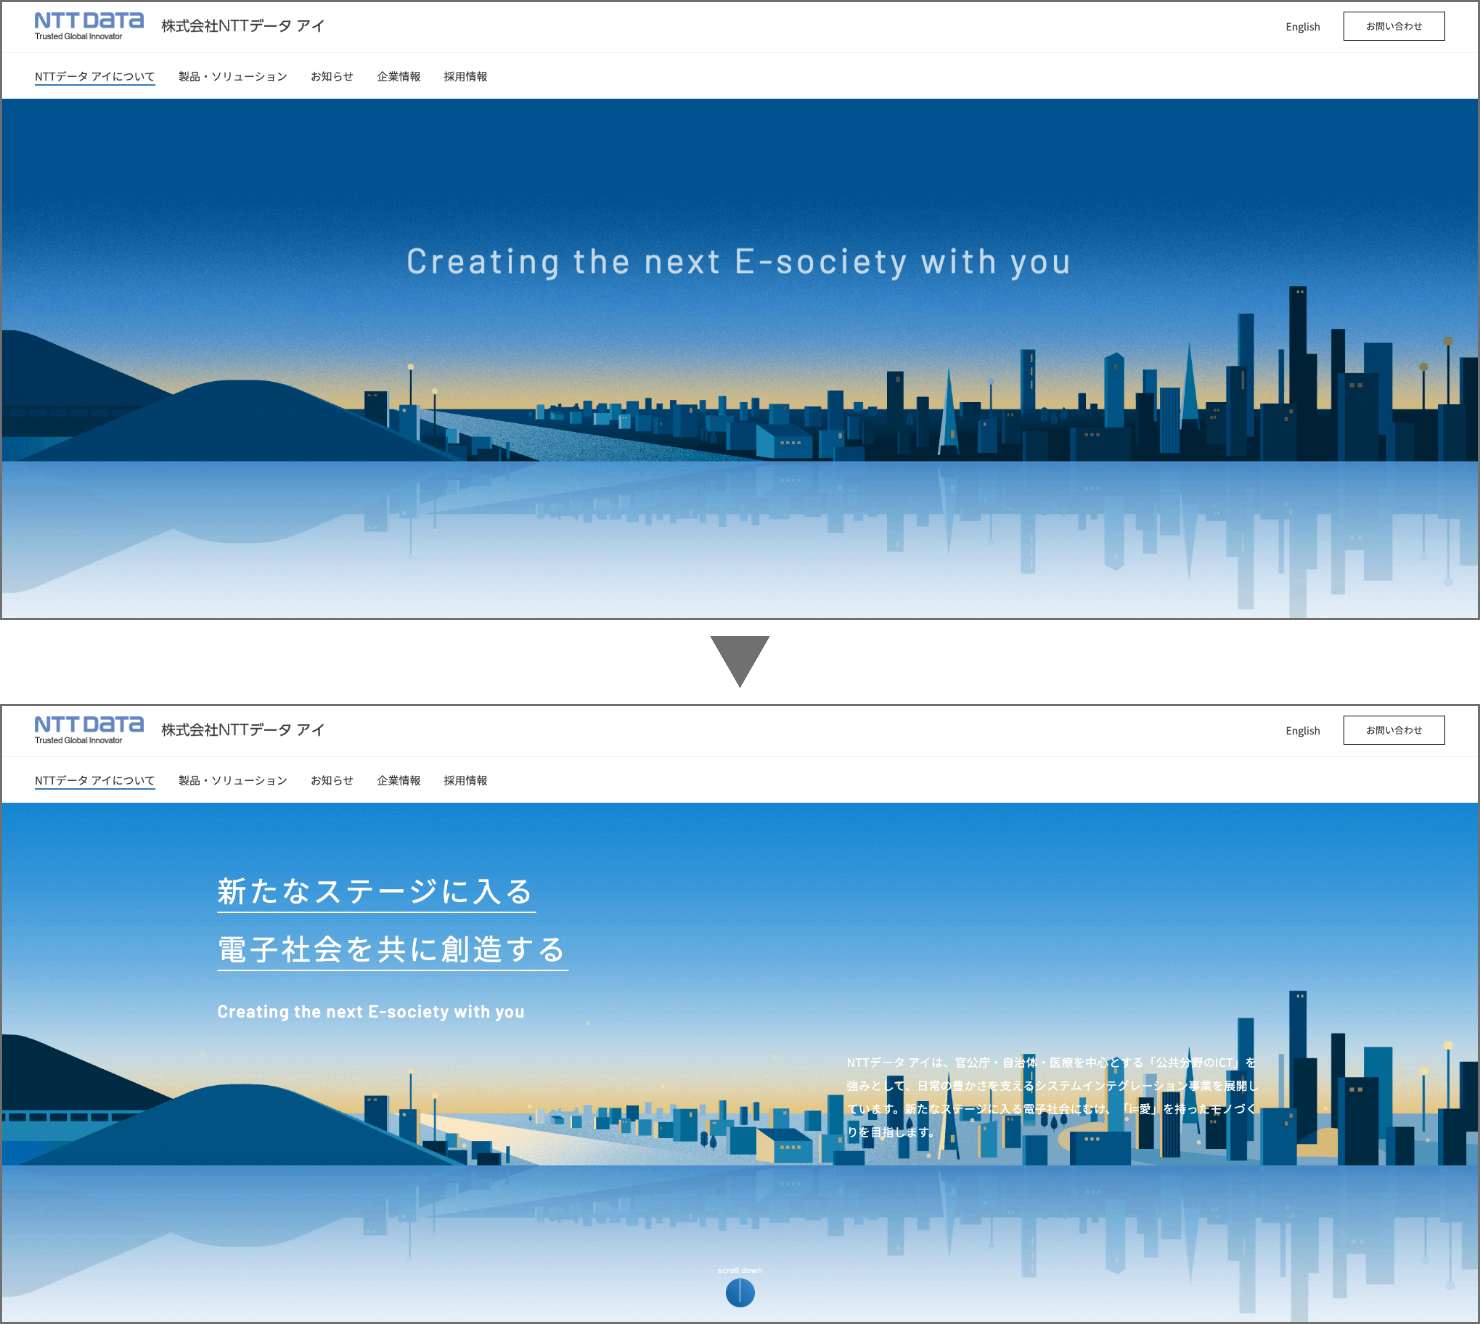 「NTTデータ アイについて」ページトップのキャプチャ。朝を迎えて明るくなる街の様子がアニメーションで表現されている。